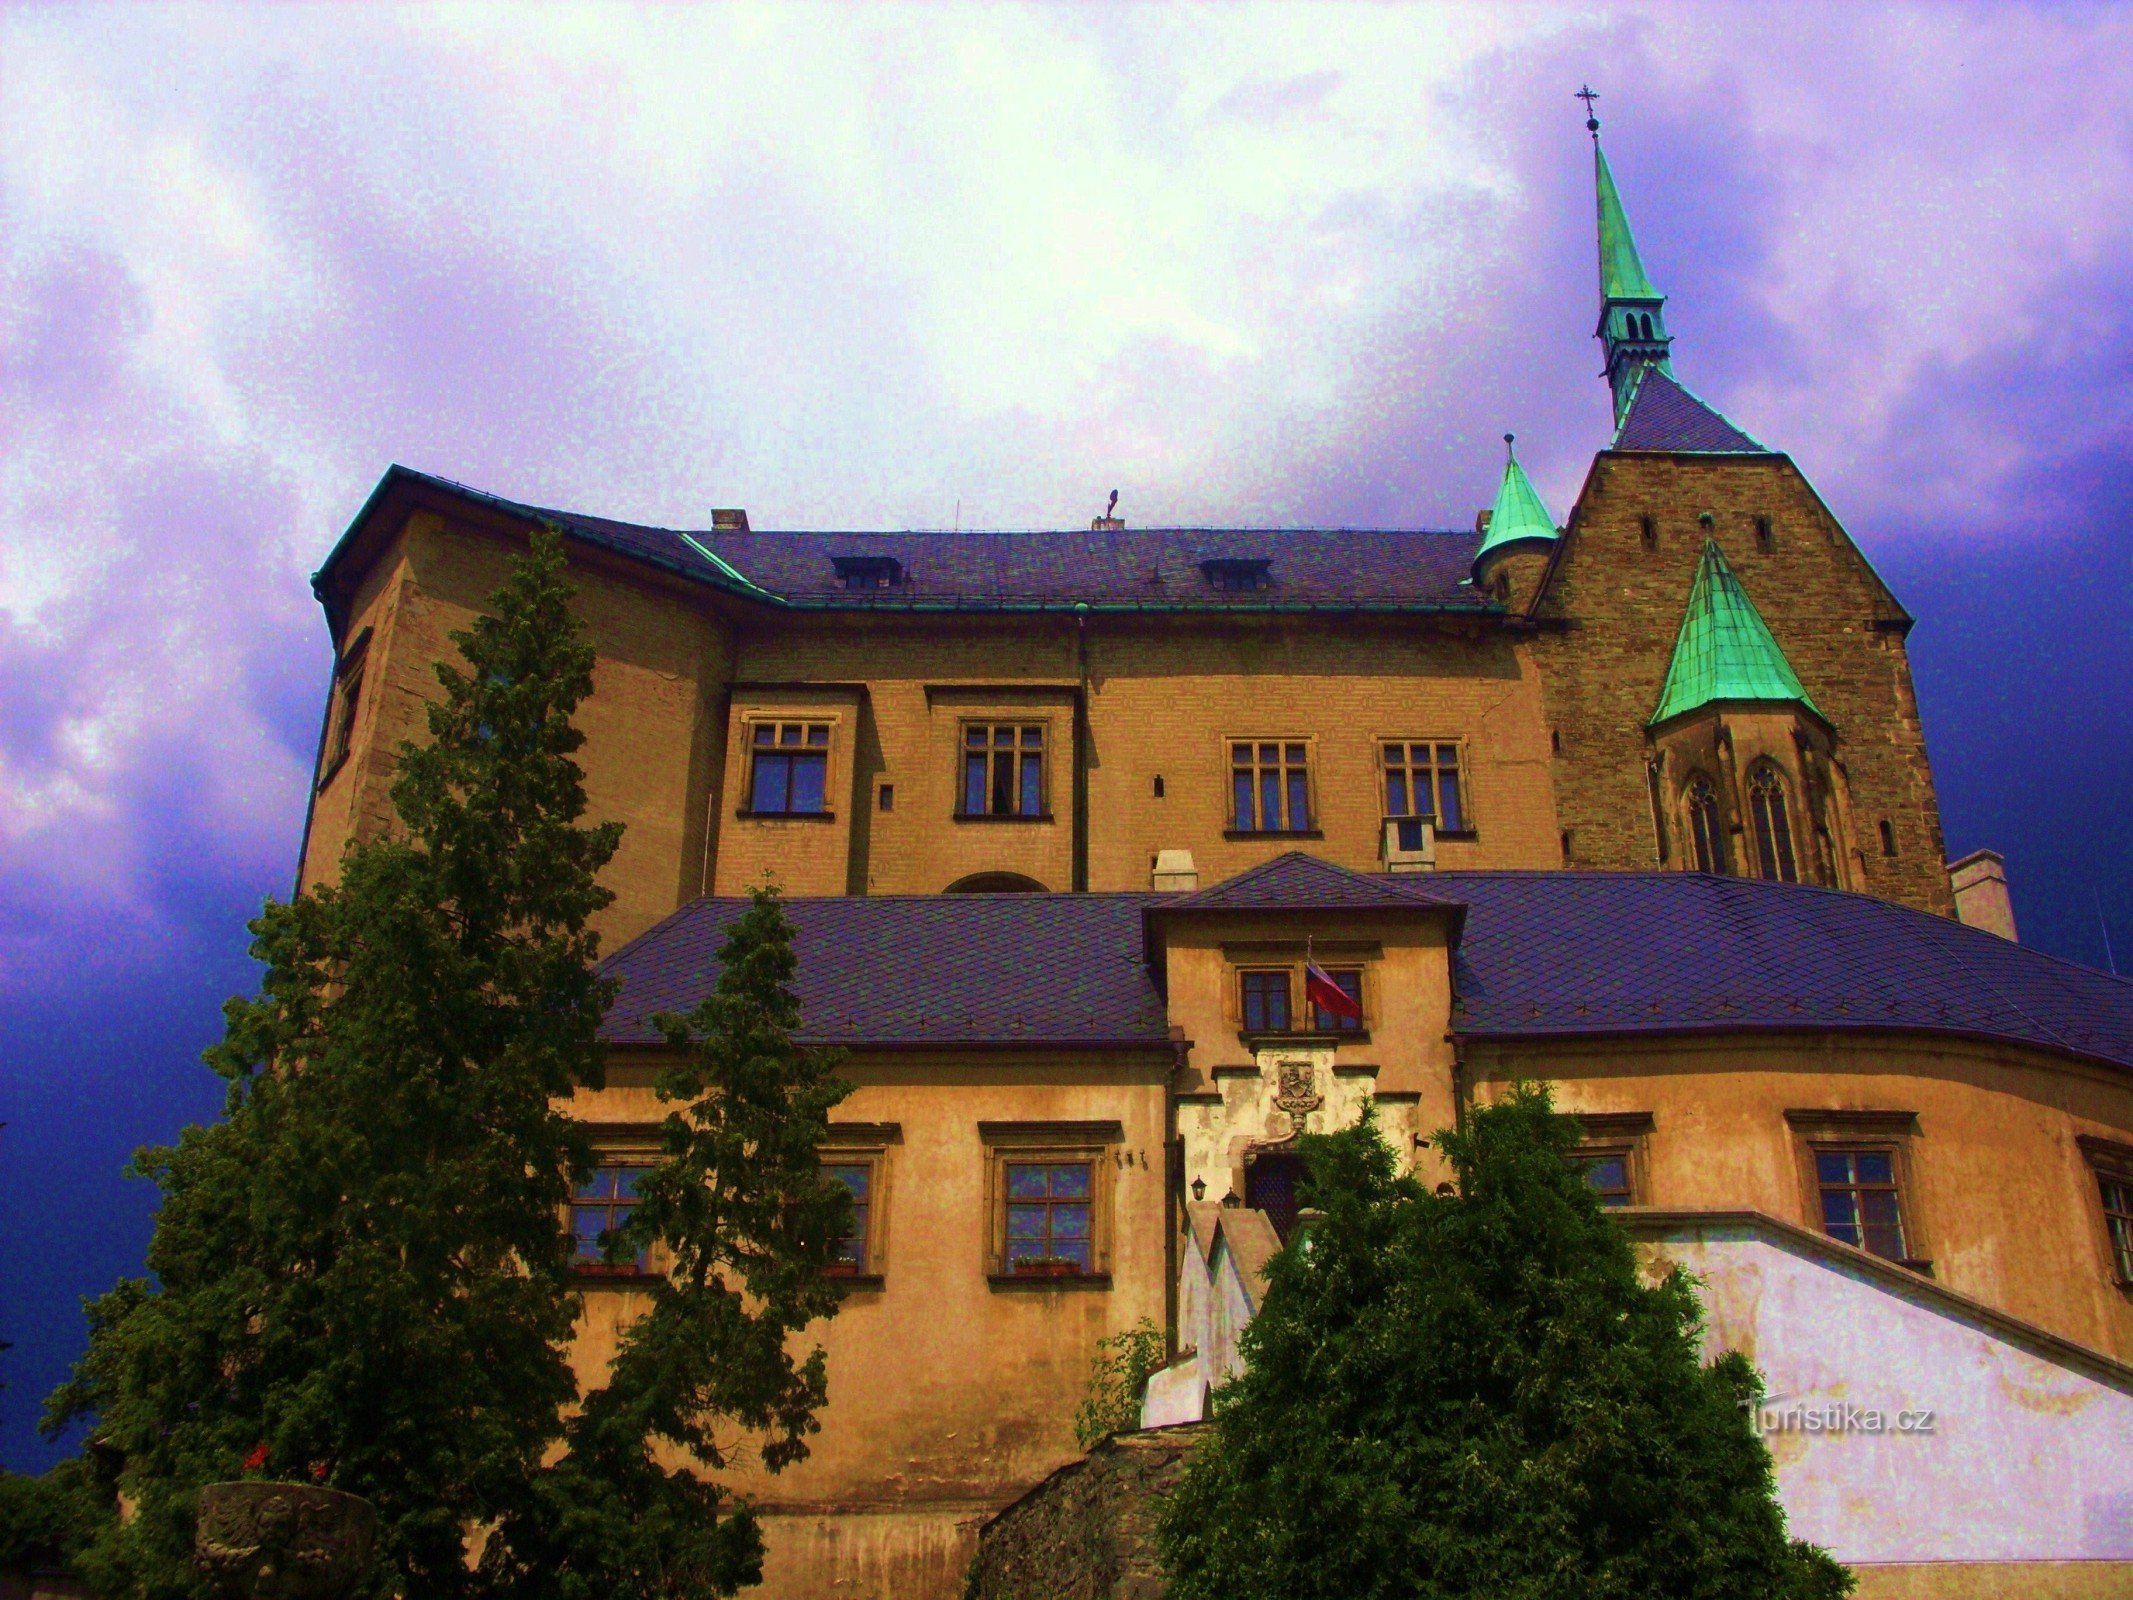 La stella sulla collina - Castello di Šternberk